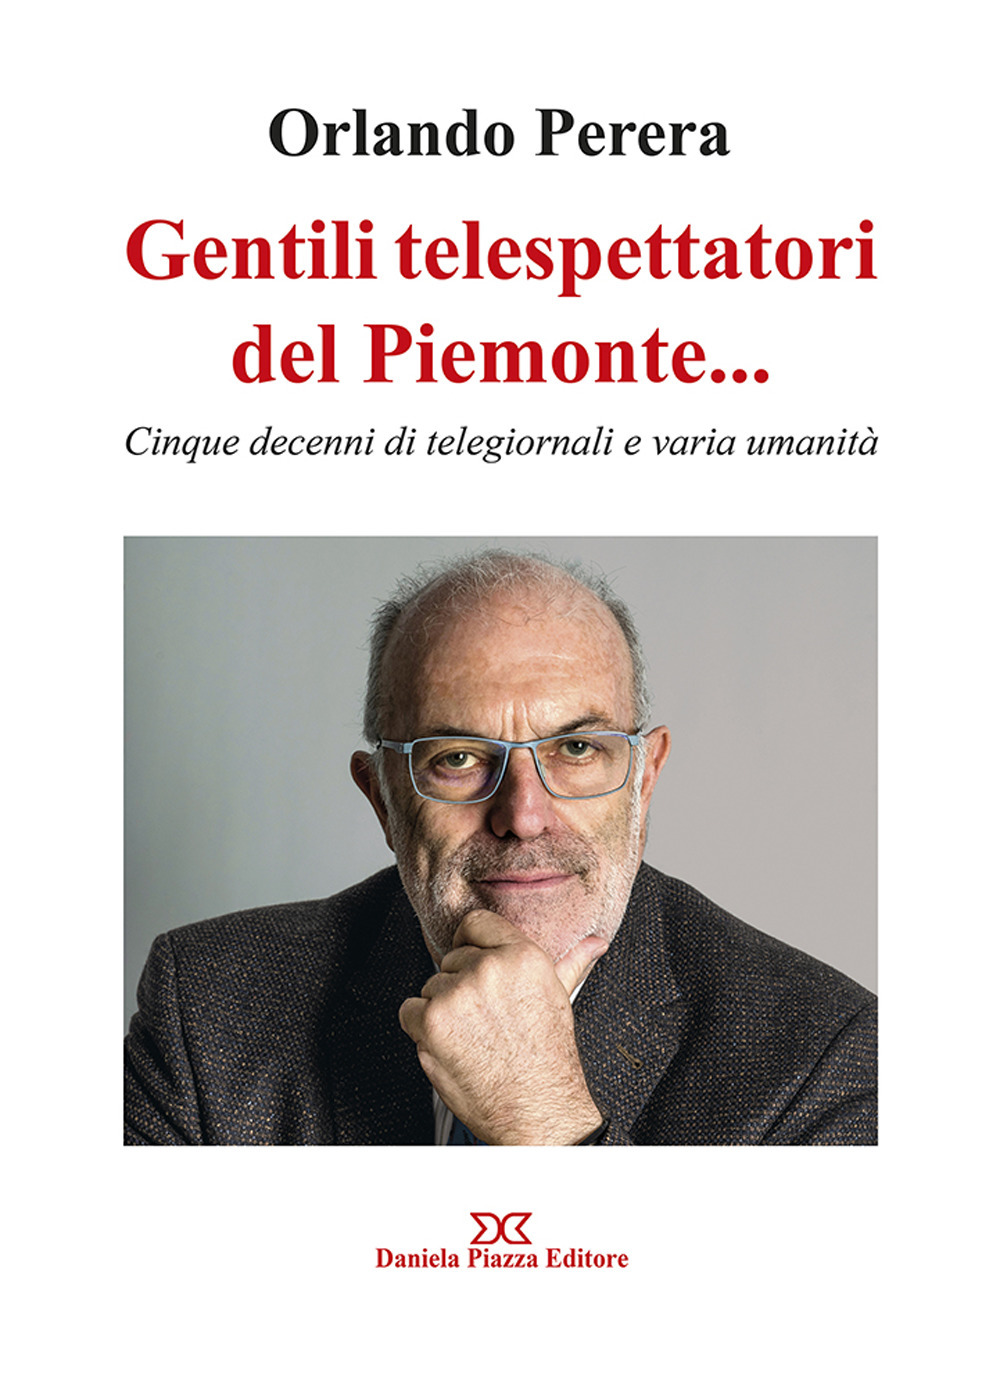 Gentili telespettatori del Piemonte... Cinque decenni di telegiornali e varia umanità